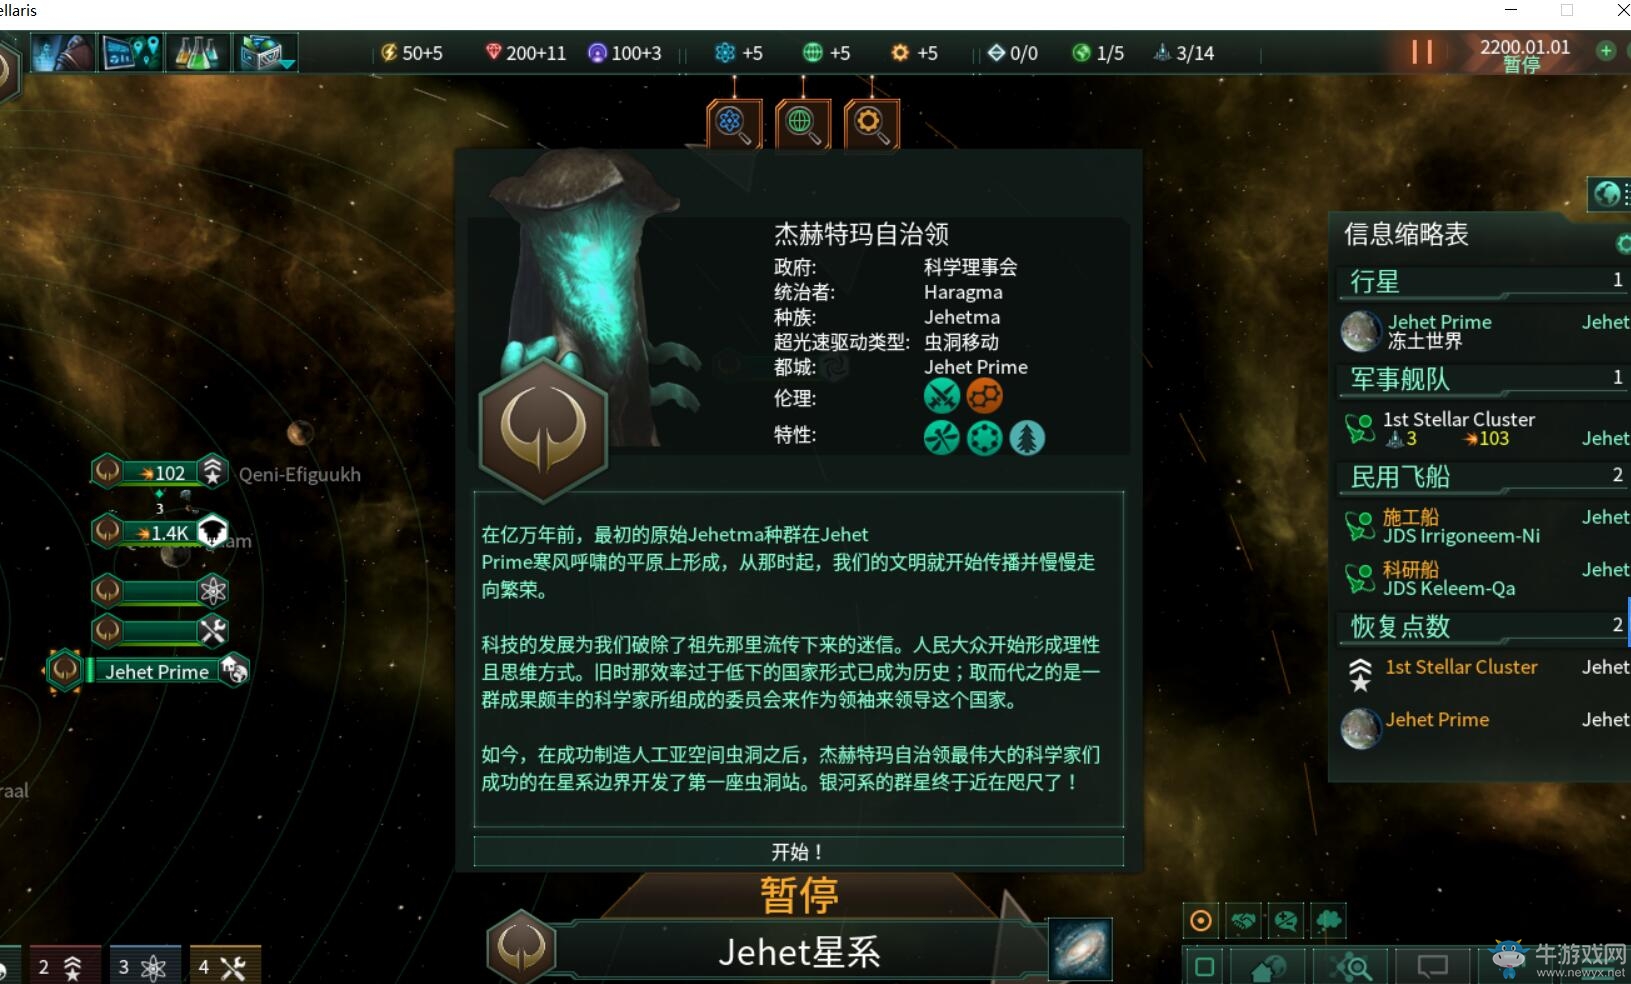 《群星》发布官方中文 却因奇葩翻译上架仅三天就回炉重造